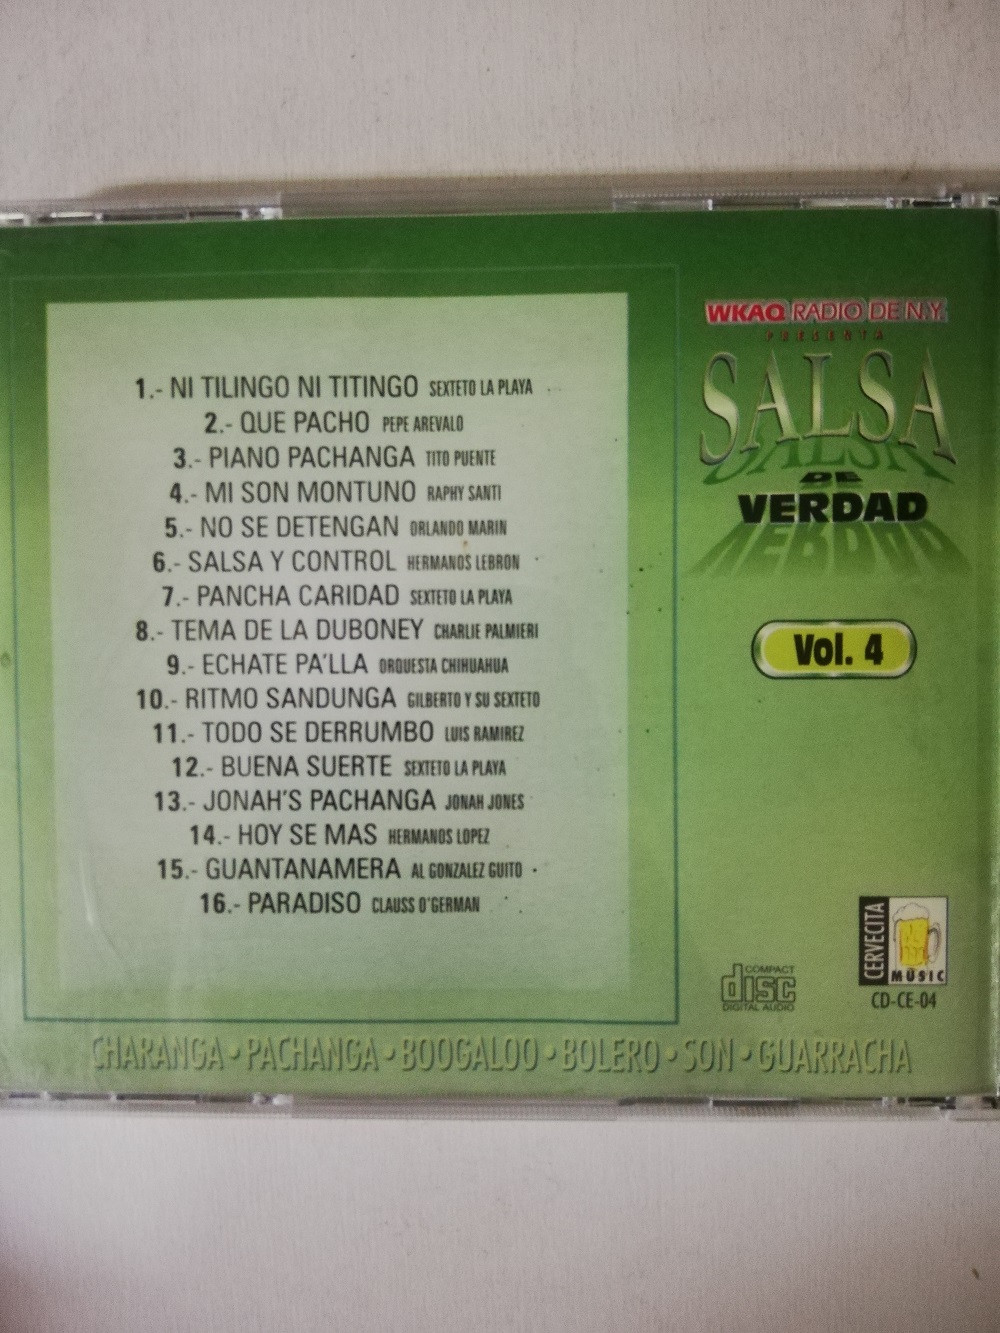 Imagen CD SALSA DE VERDAD - SALSA DE VERDAD VOL. 4 2